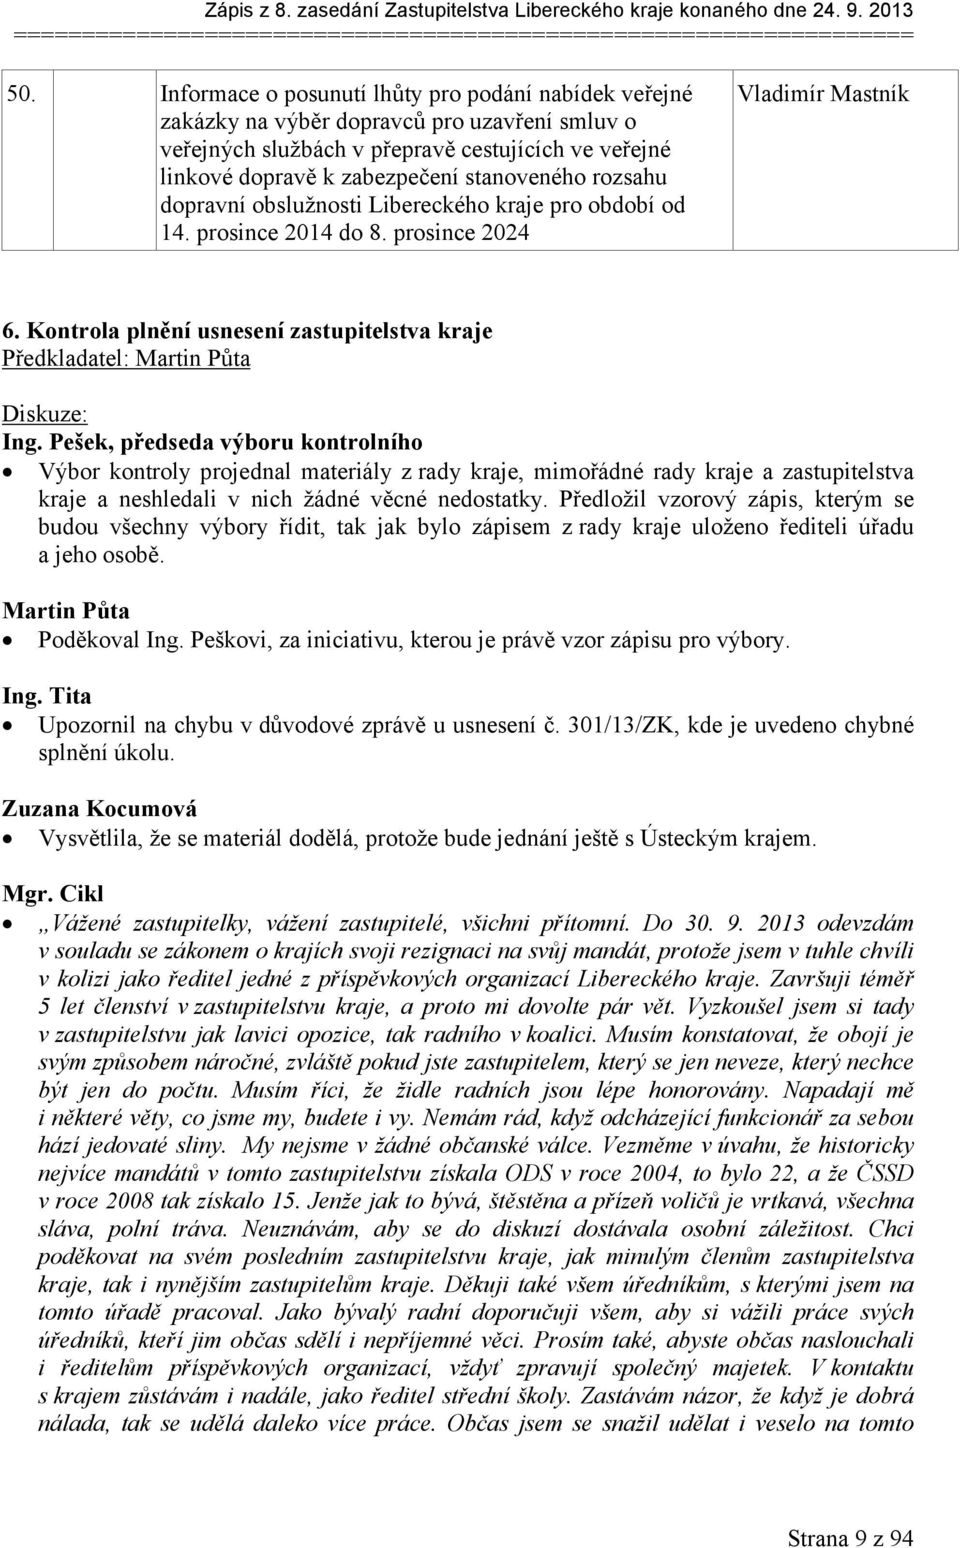 rozsahu dopravní obslužnosti Libereckého kraje pro období od 14. prosince 2014 do 8. prosince 2024 Vladimír Mastník 6.